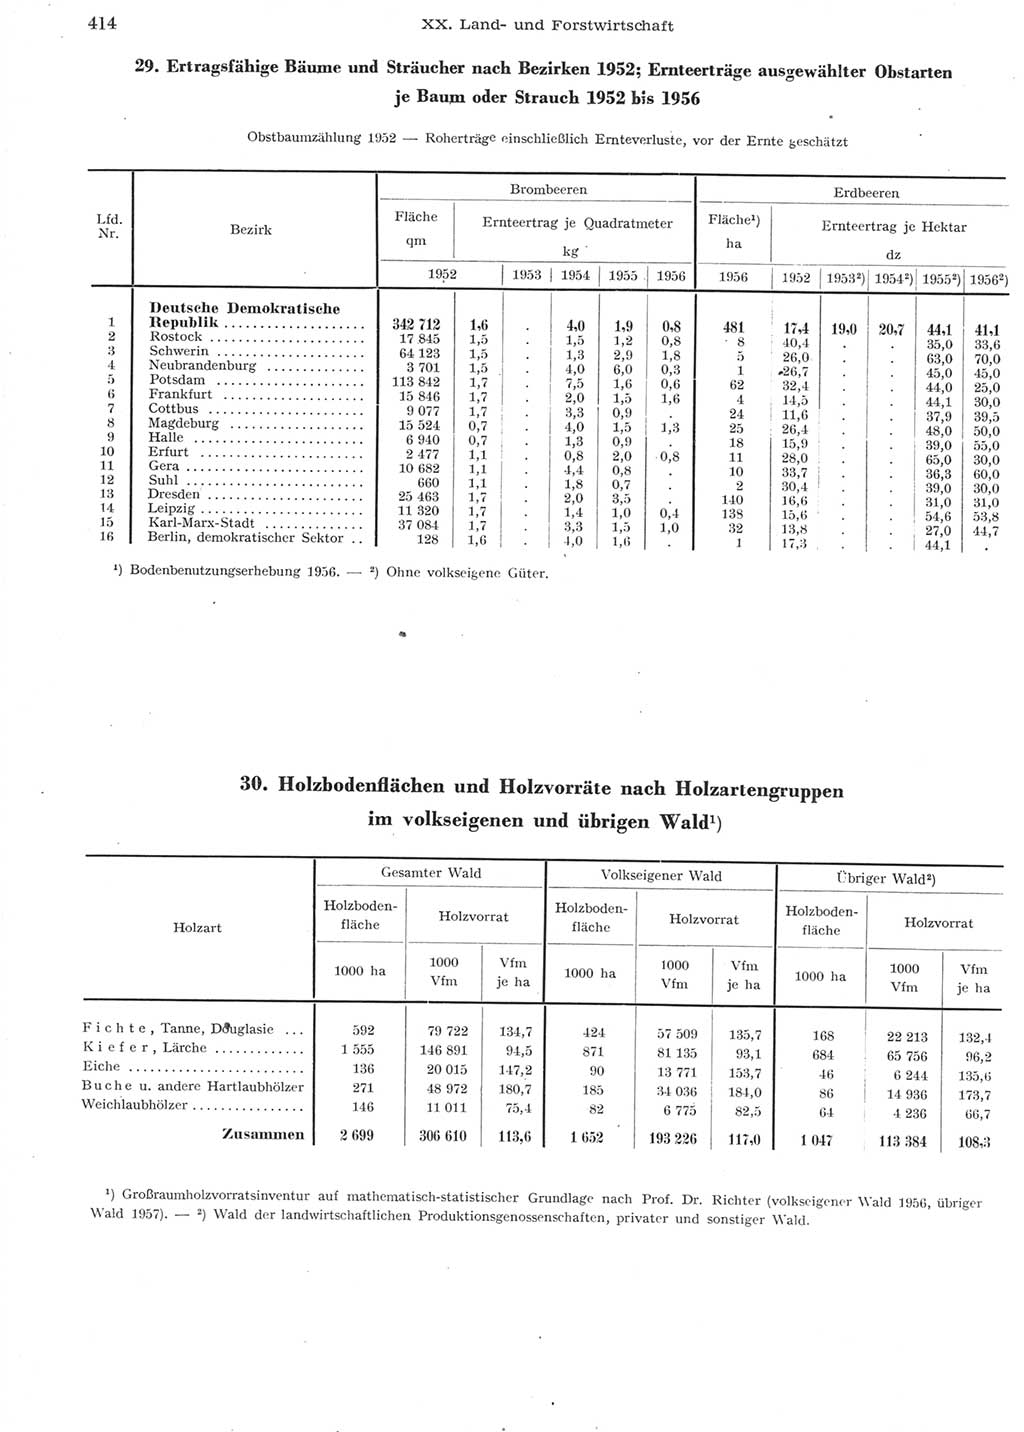 Statistisches Jahrbuch der Deutschen Demokratischen Republik (DDR) 1957, Seite 414 (Stat. Jb. DDR 1957, S. 414)